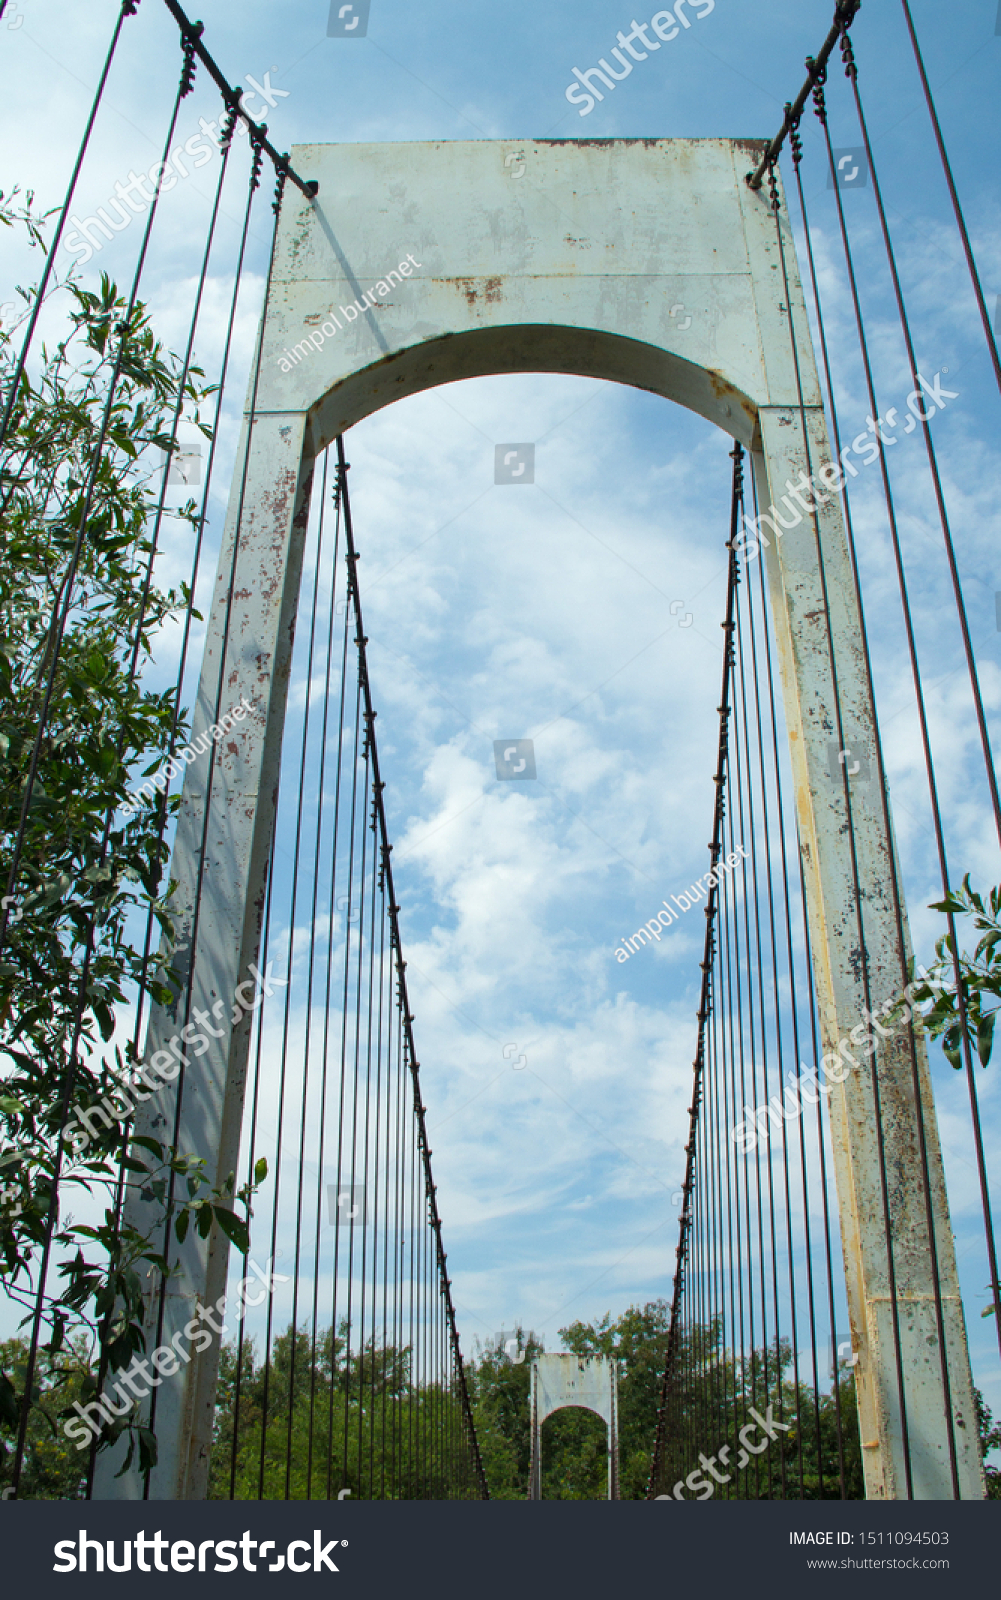 Ancient suspension bridge,Suspension bridge and blue sky. #1511094503